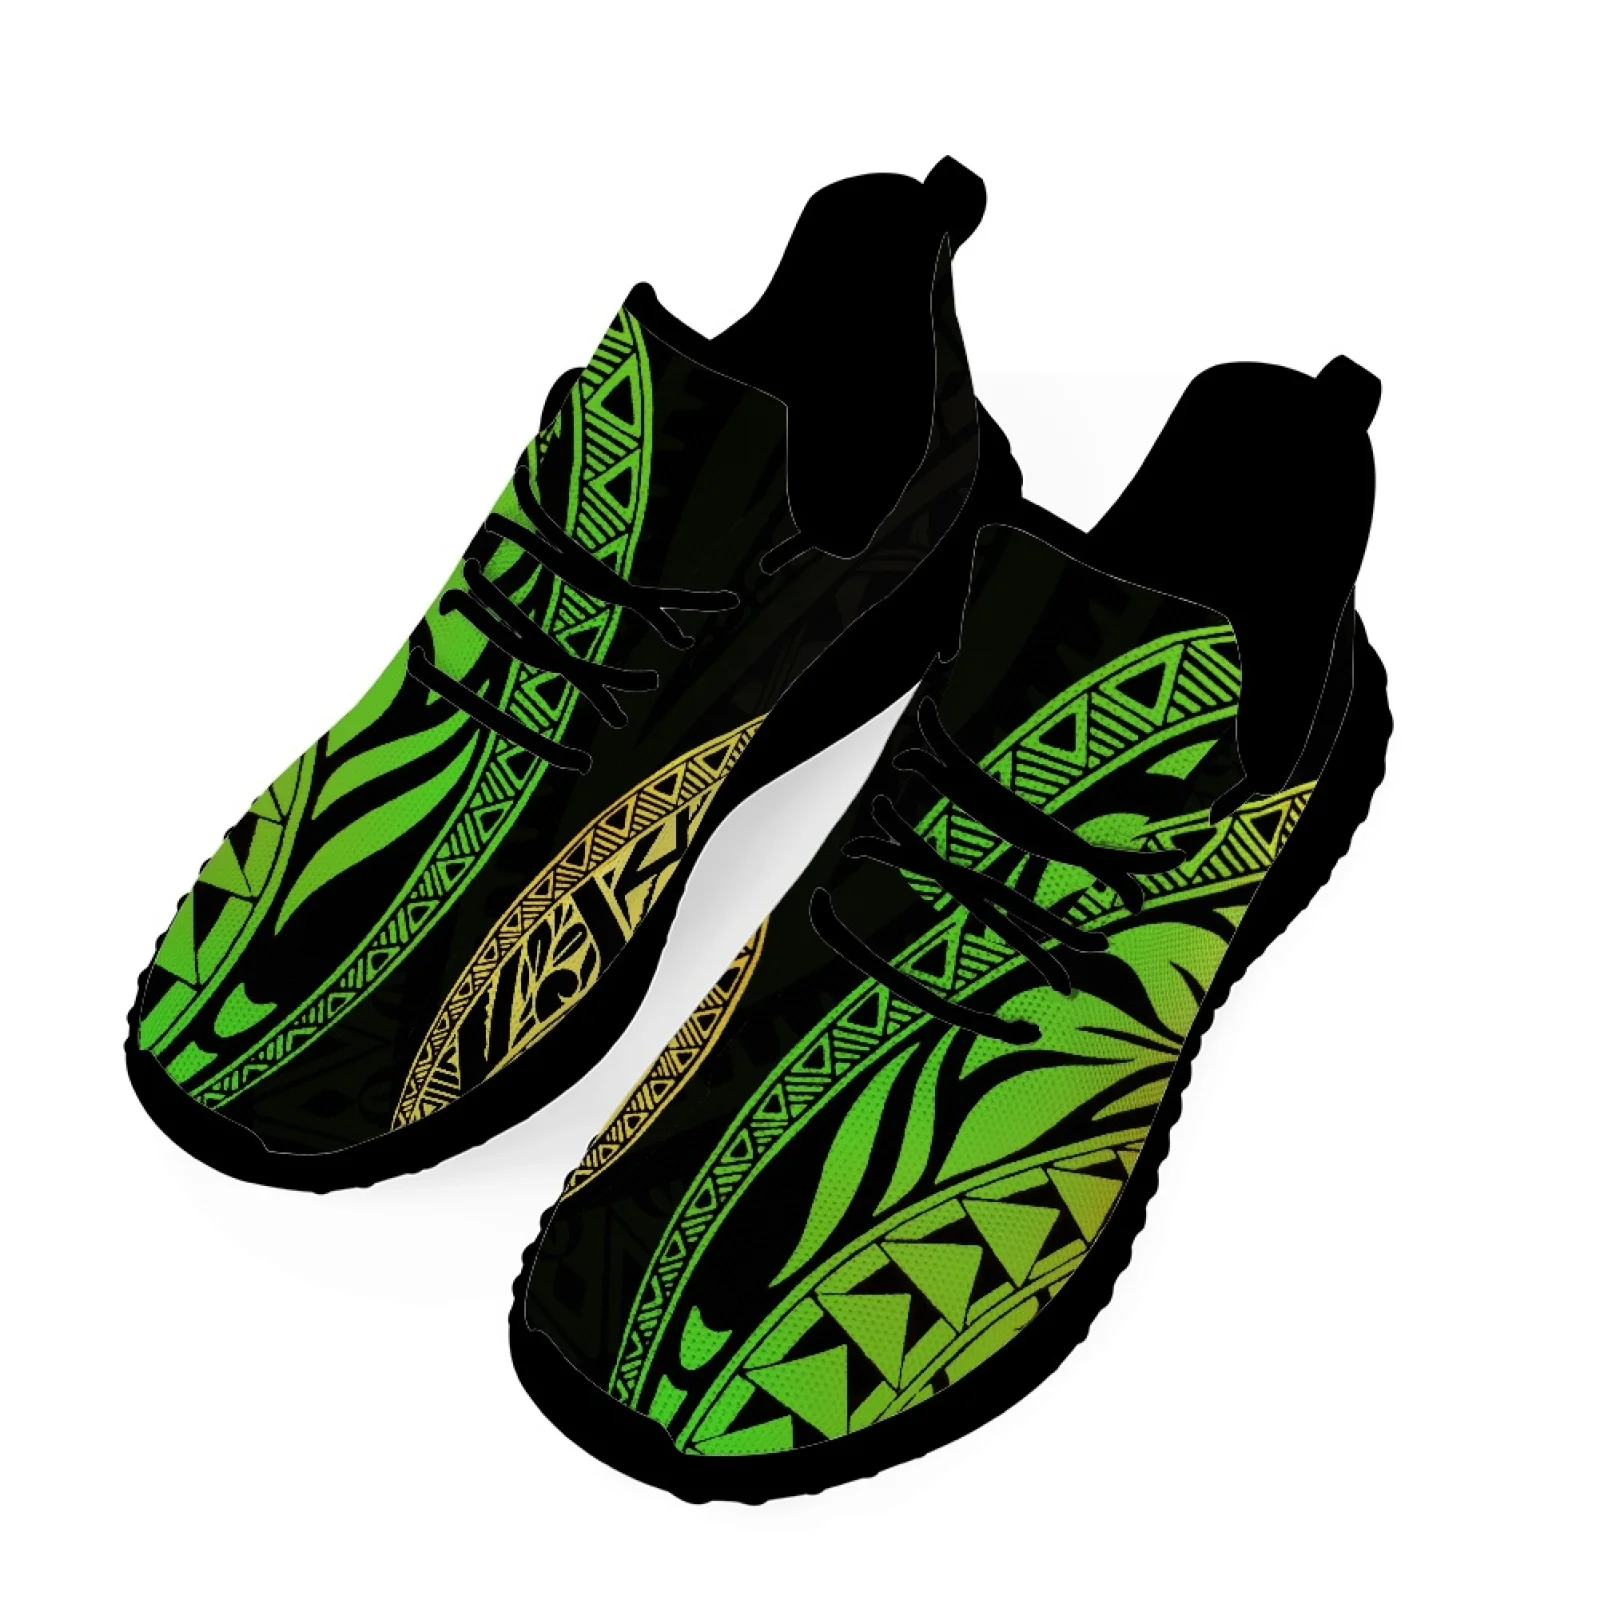 

Полинезийские племенные тату-принты понпей тотем, сверхлегкие дышащие кроссовки на мягкой подошве из полиэстера, зеленая вязаная обувь TFly